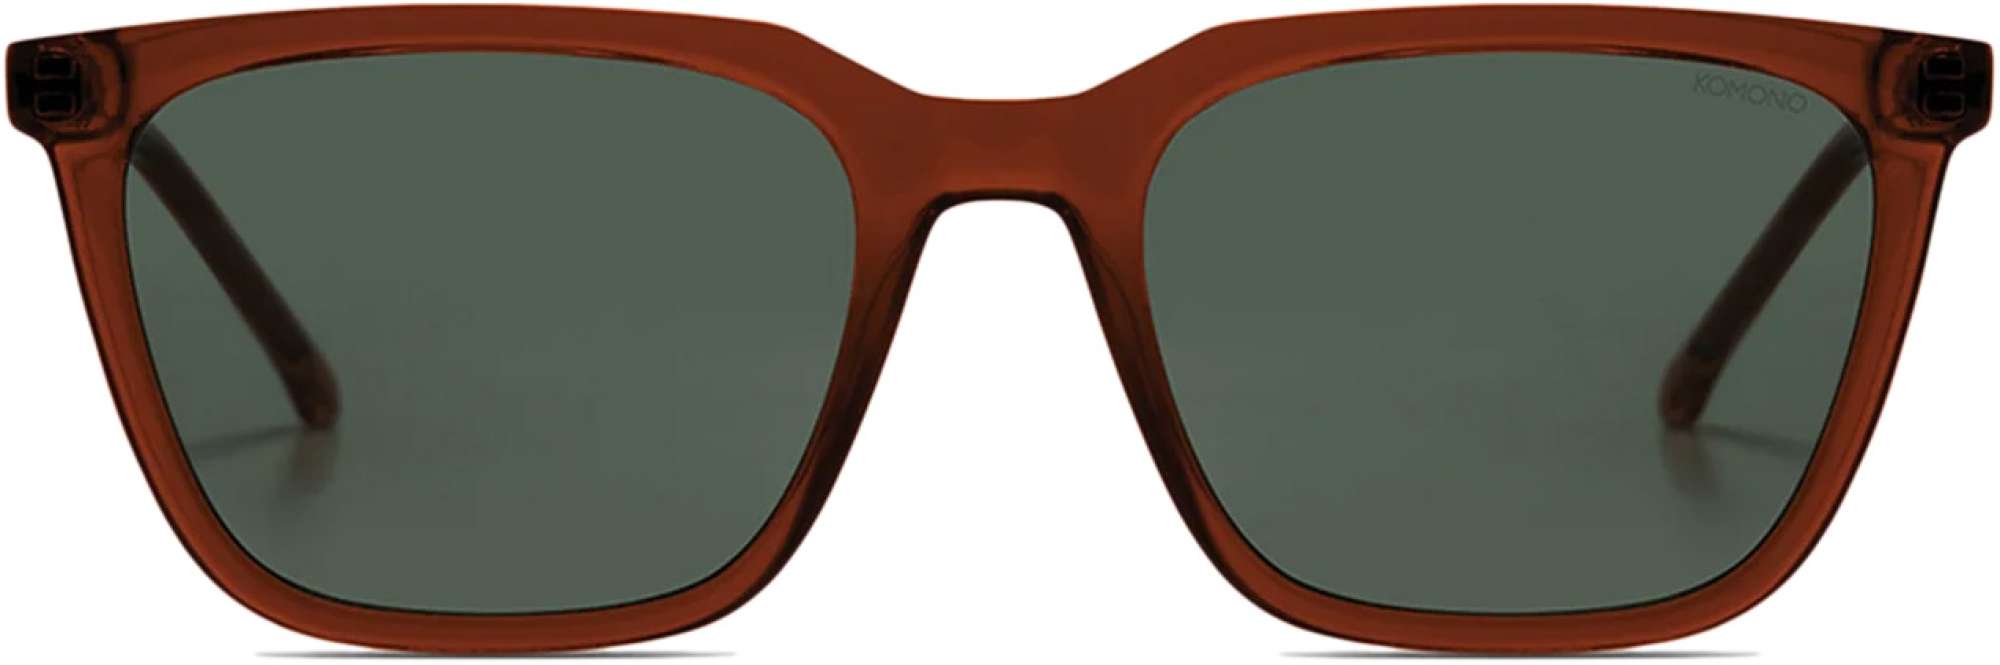 Afbeelding van Komono Jay sunglasses bronze